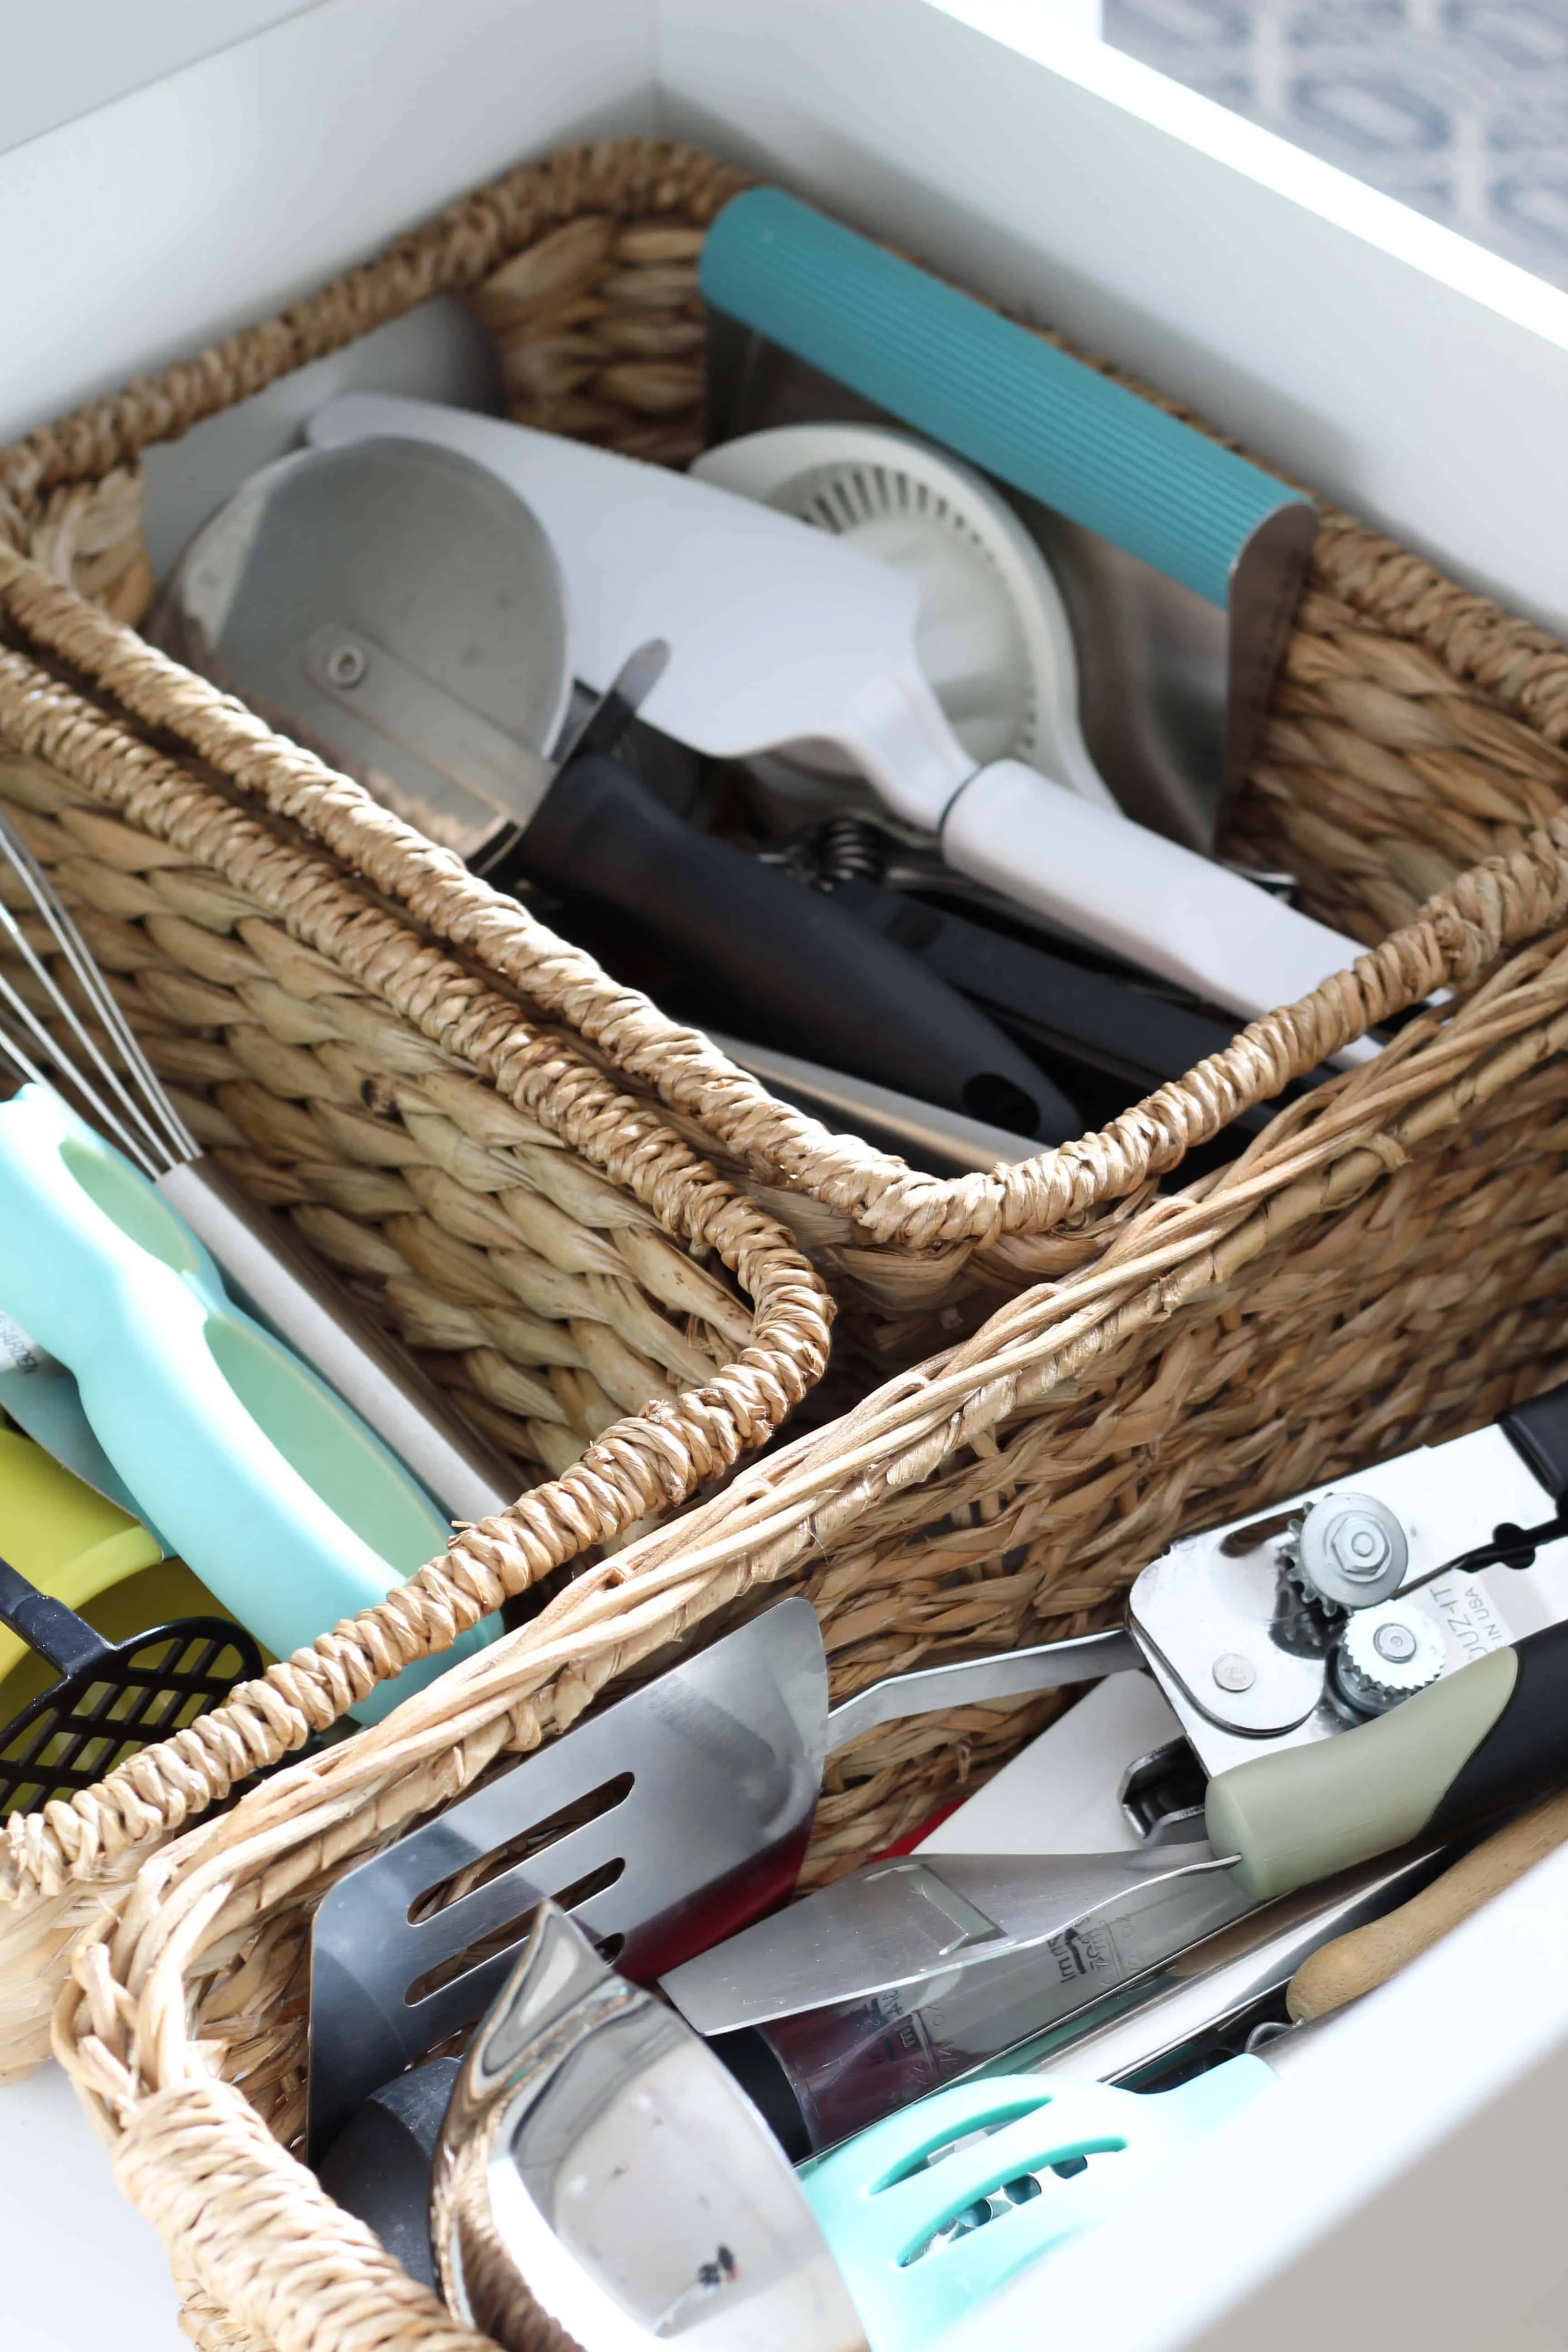 baskets in kitchen drawer to organized kitchen utensils